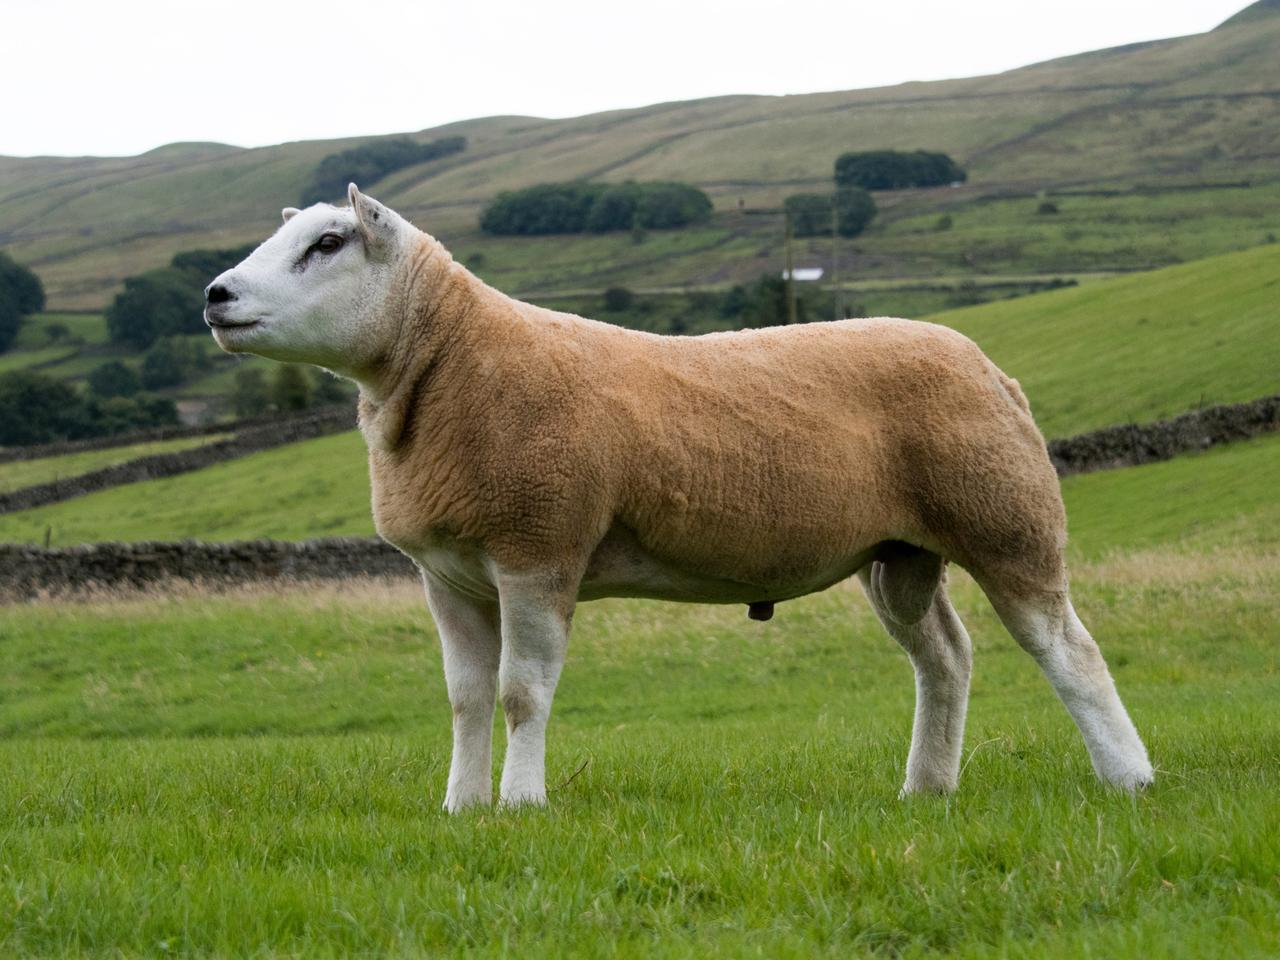 オランダ原産種を改良したテクセル種の羊。